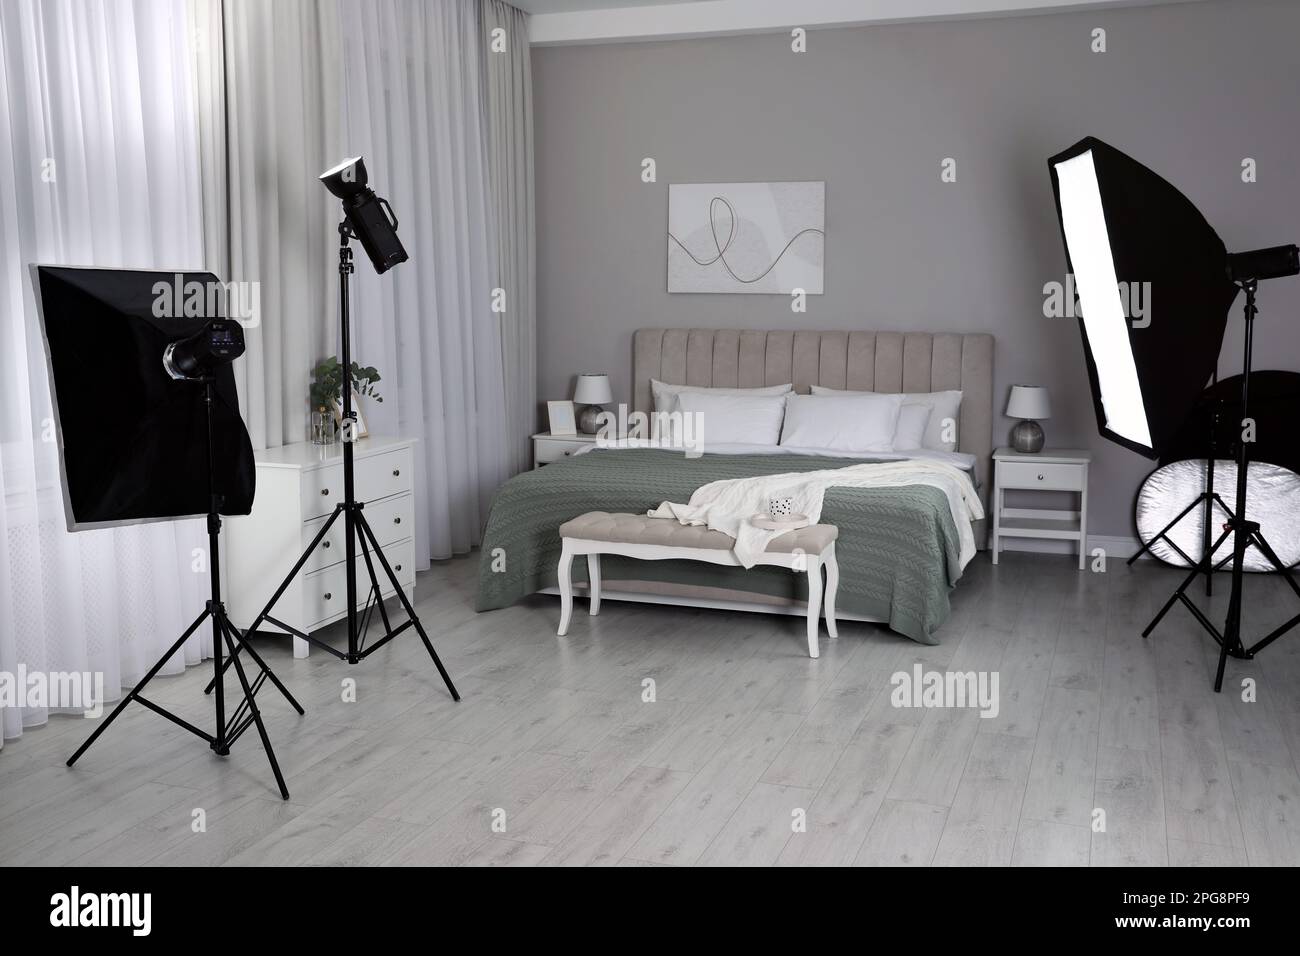 Équipement professionnel de studio photo préparé pour photographier l'intérieur de la chambre à coucher Banque D'Images